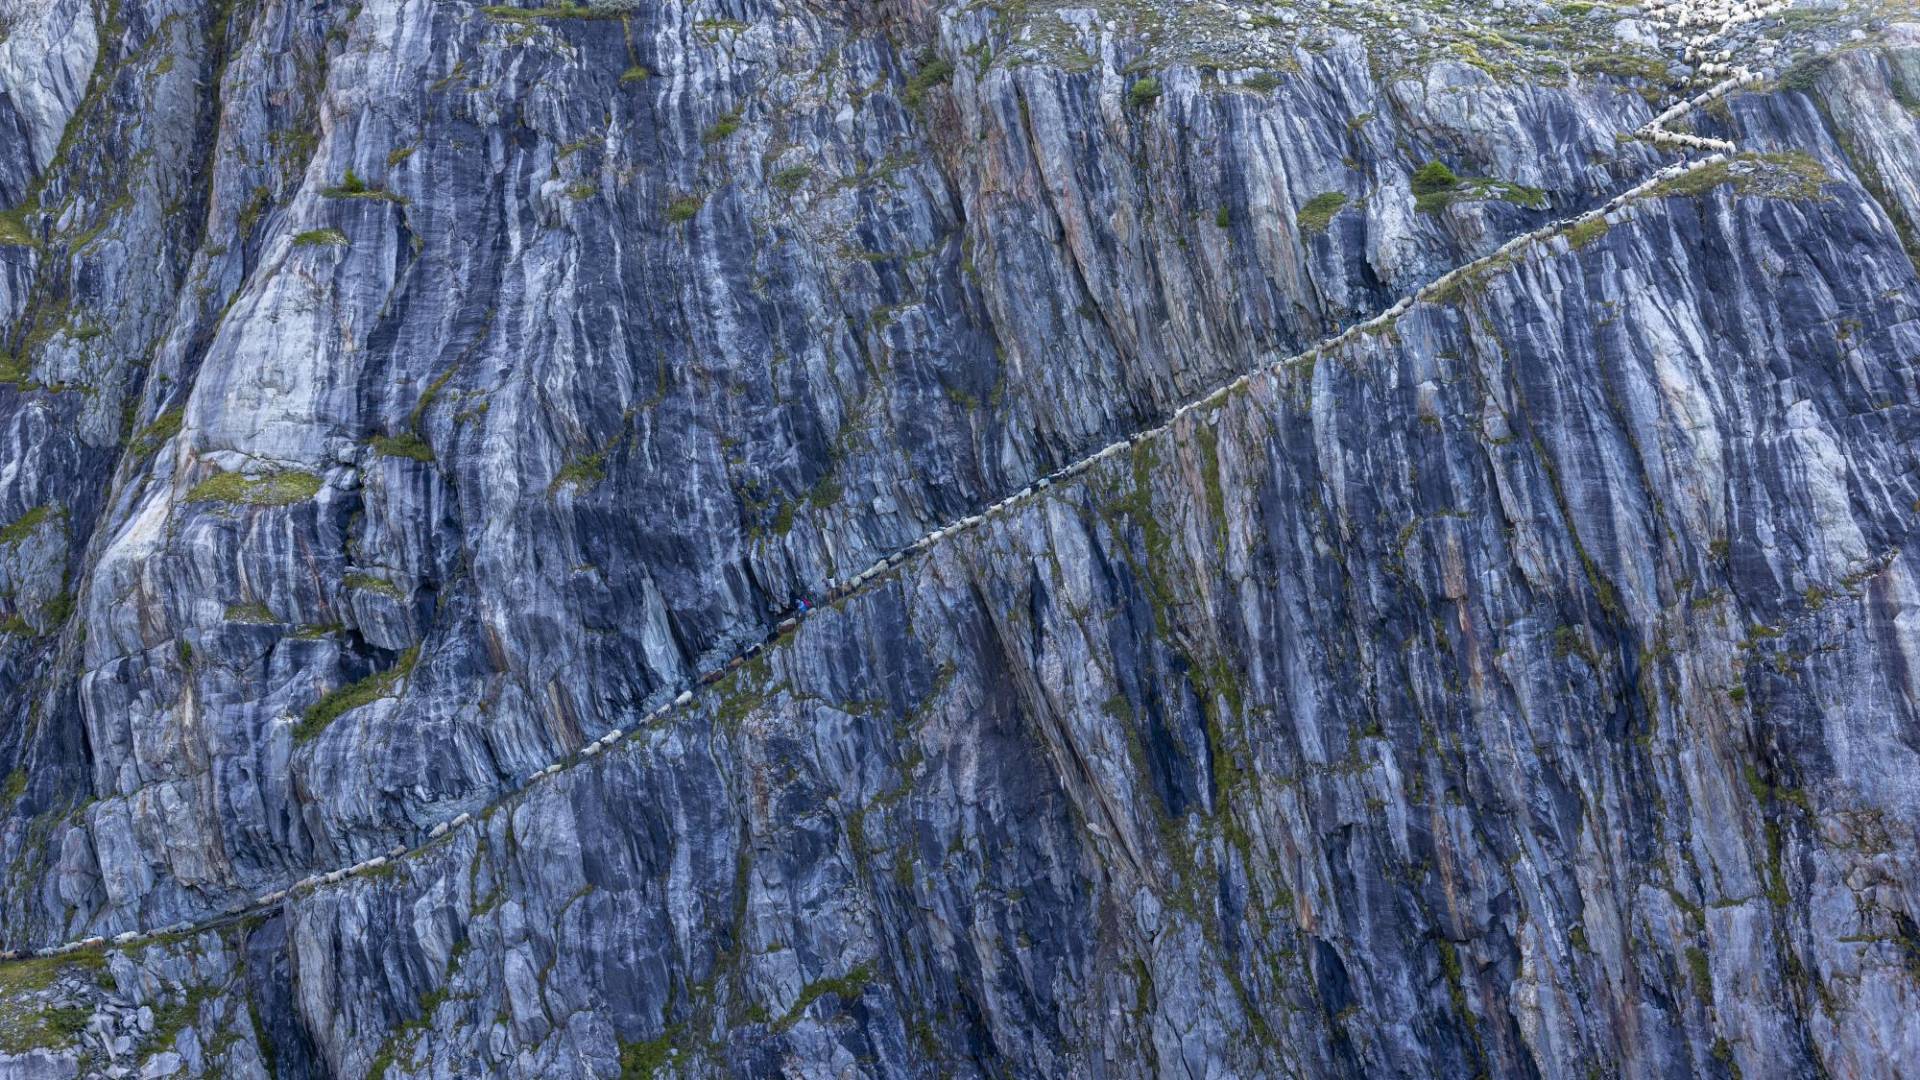 $!Un glaciar antes llenaba un cañón cerca de Belalp, Suiza. Después de que se derritió, tallaron este camino en la pared.